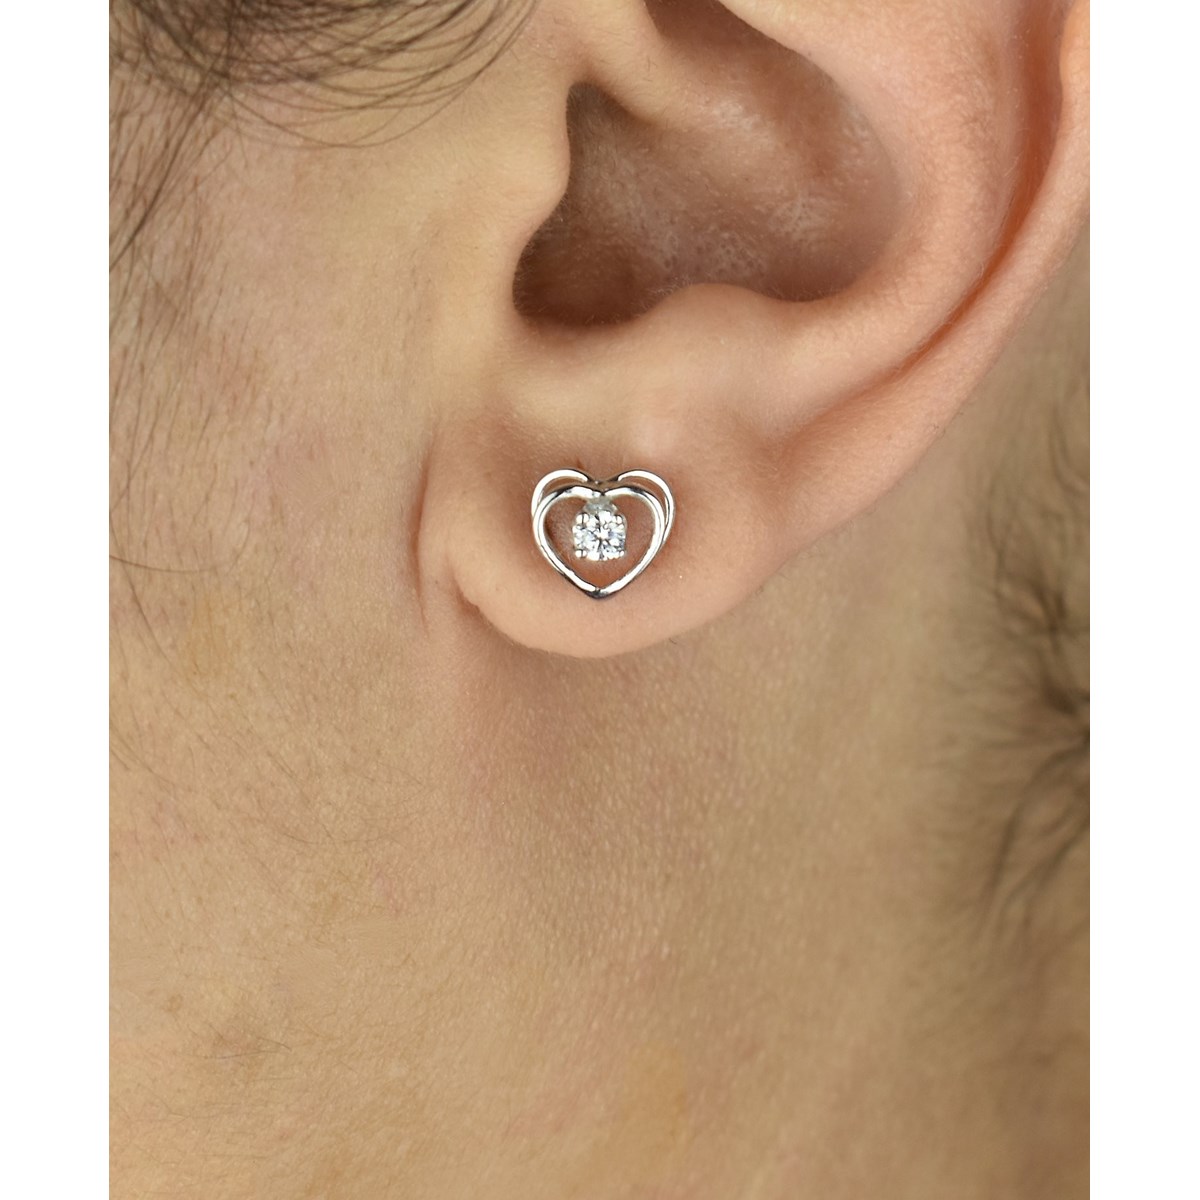 Boucles d'oreilles puce coeur oxyde de zirconium Argent 925 Rhodié - vue 3